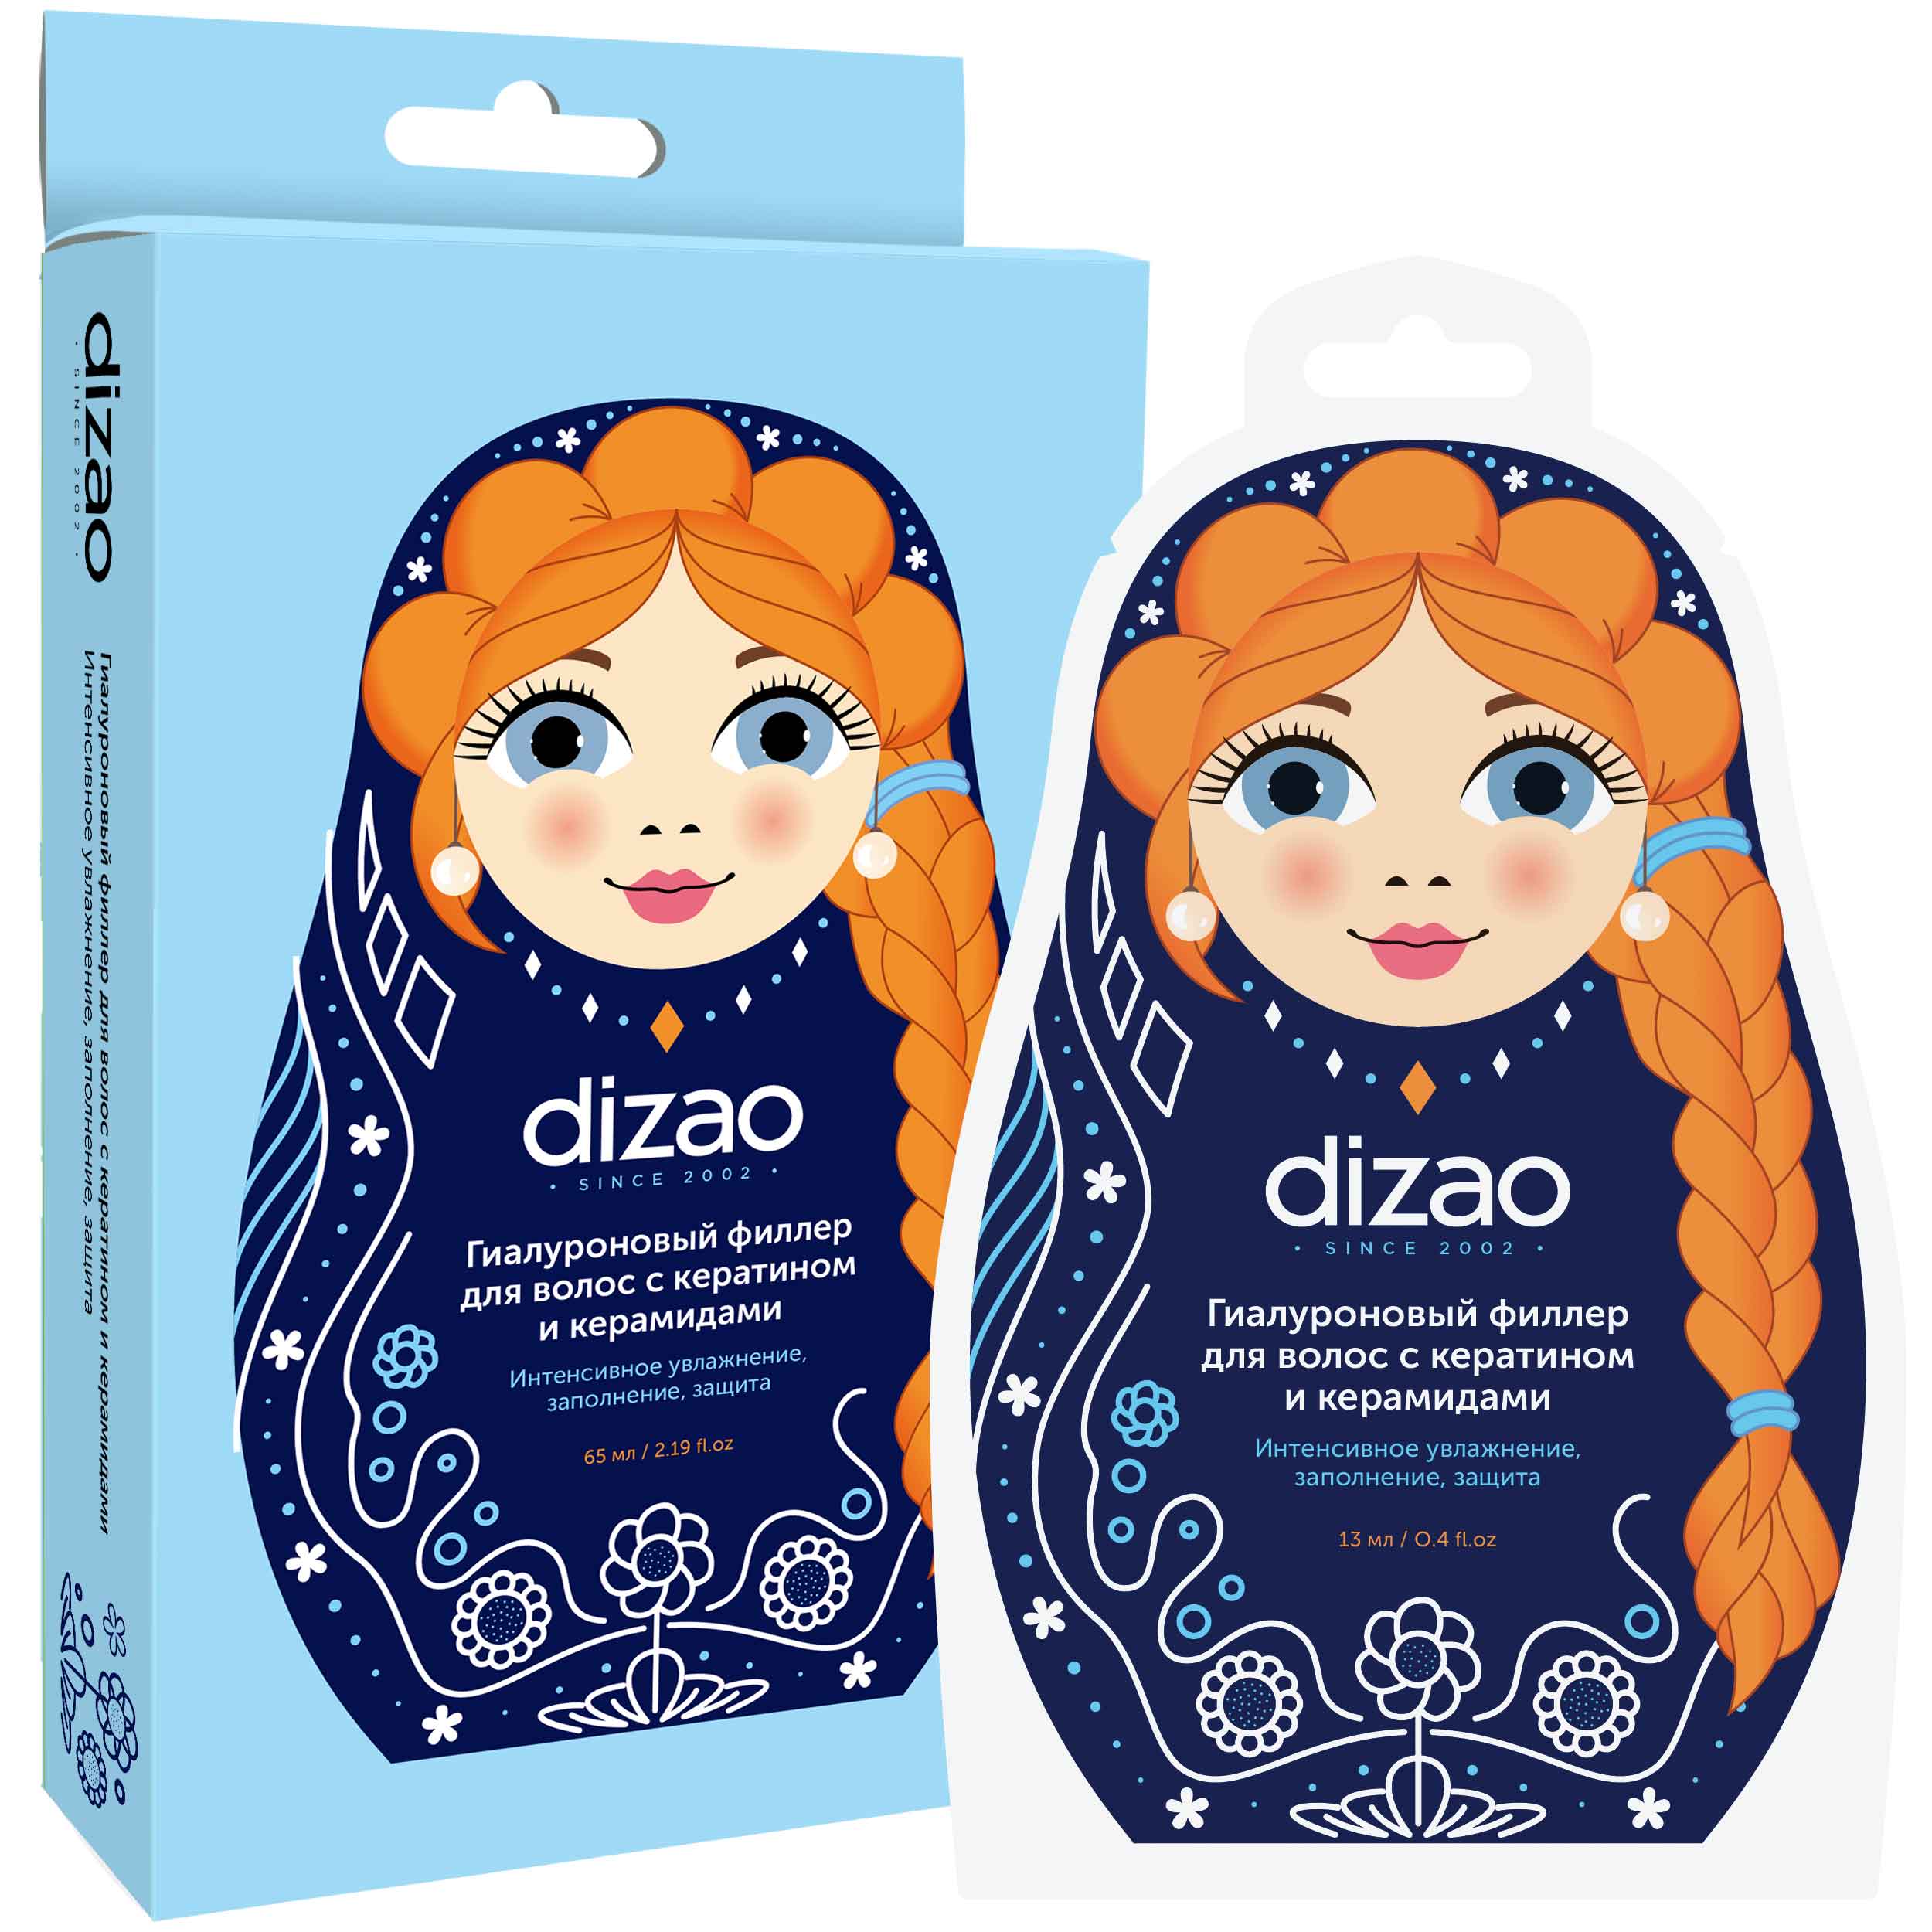 Dizao Гиалуроновый филлер для волос с кератином и керамидами